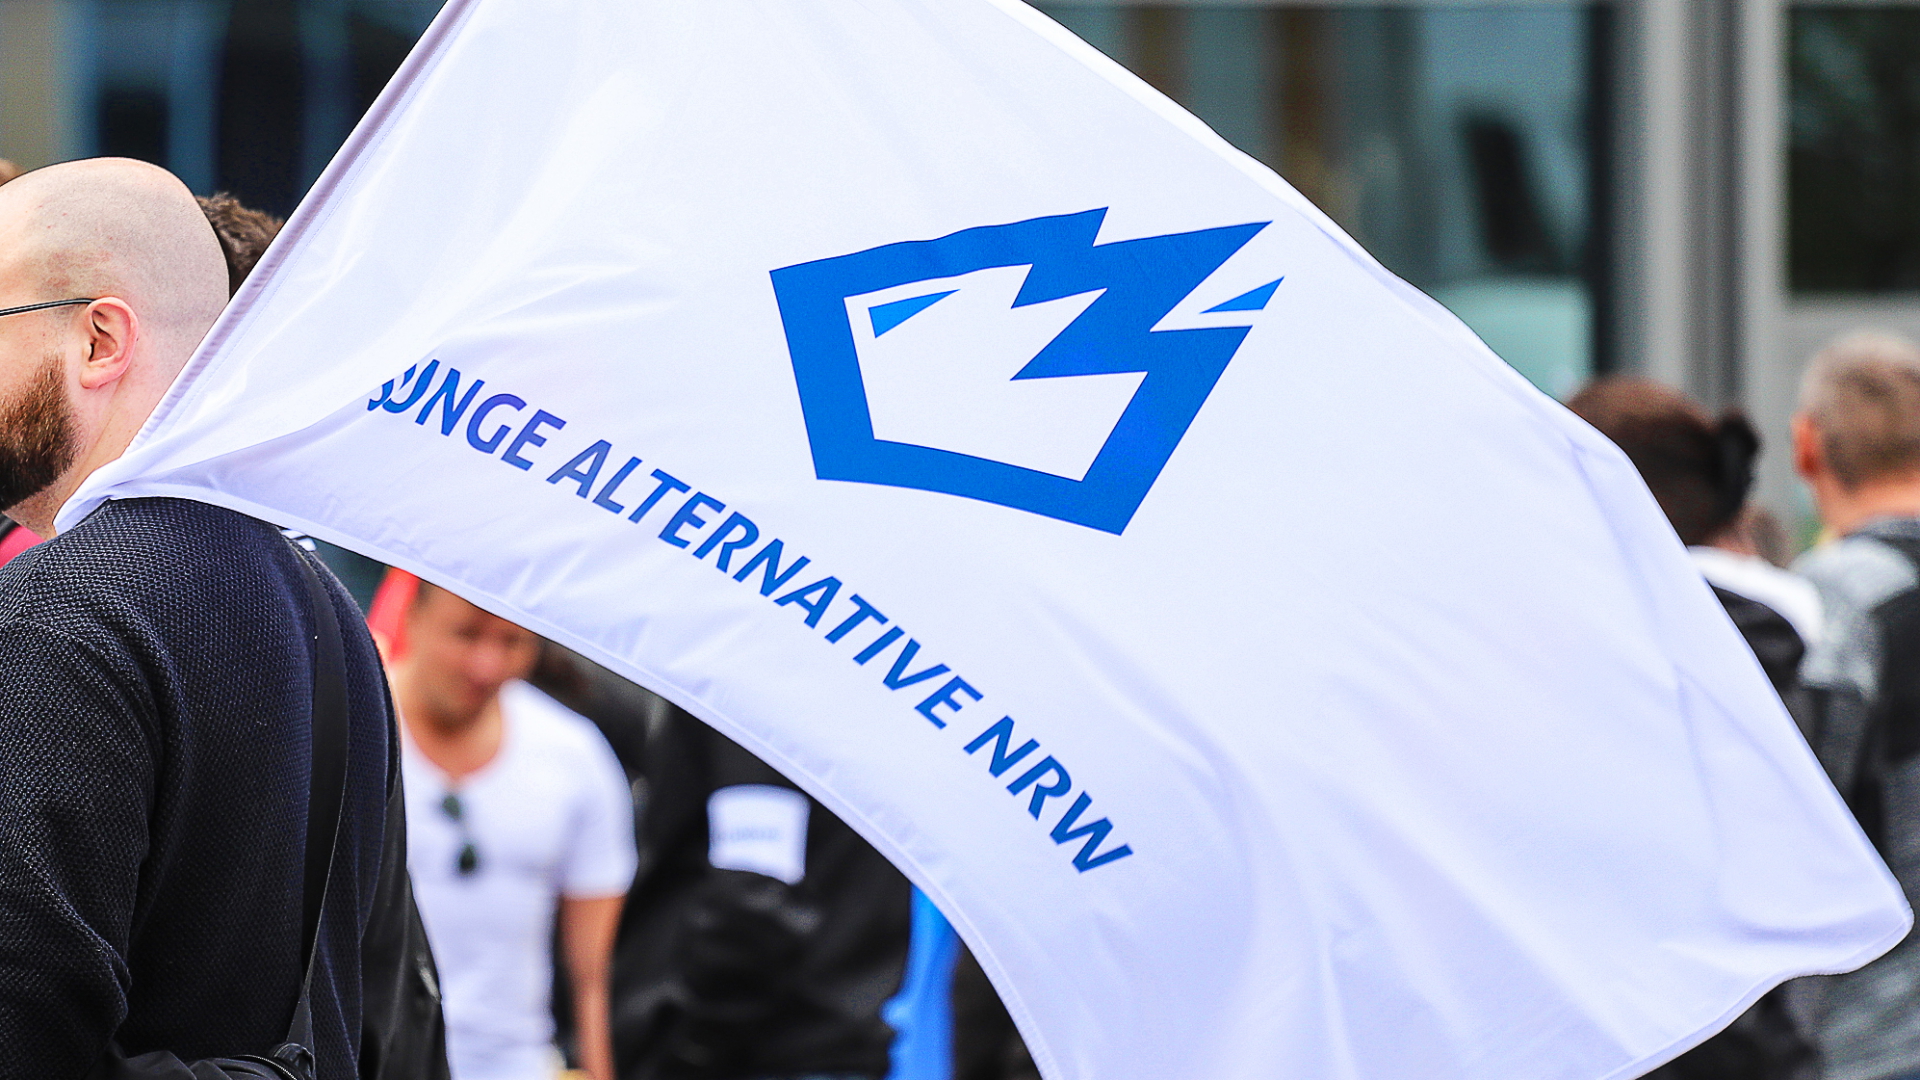 Fahne der Jungen Alternative auf einer Wahlkampfkundgebung in Dortmund